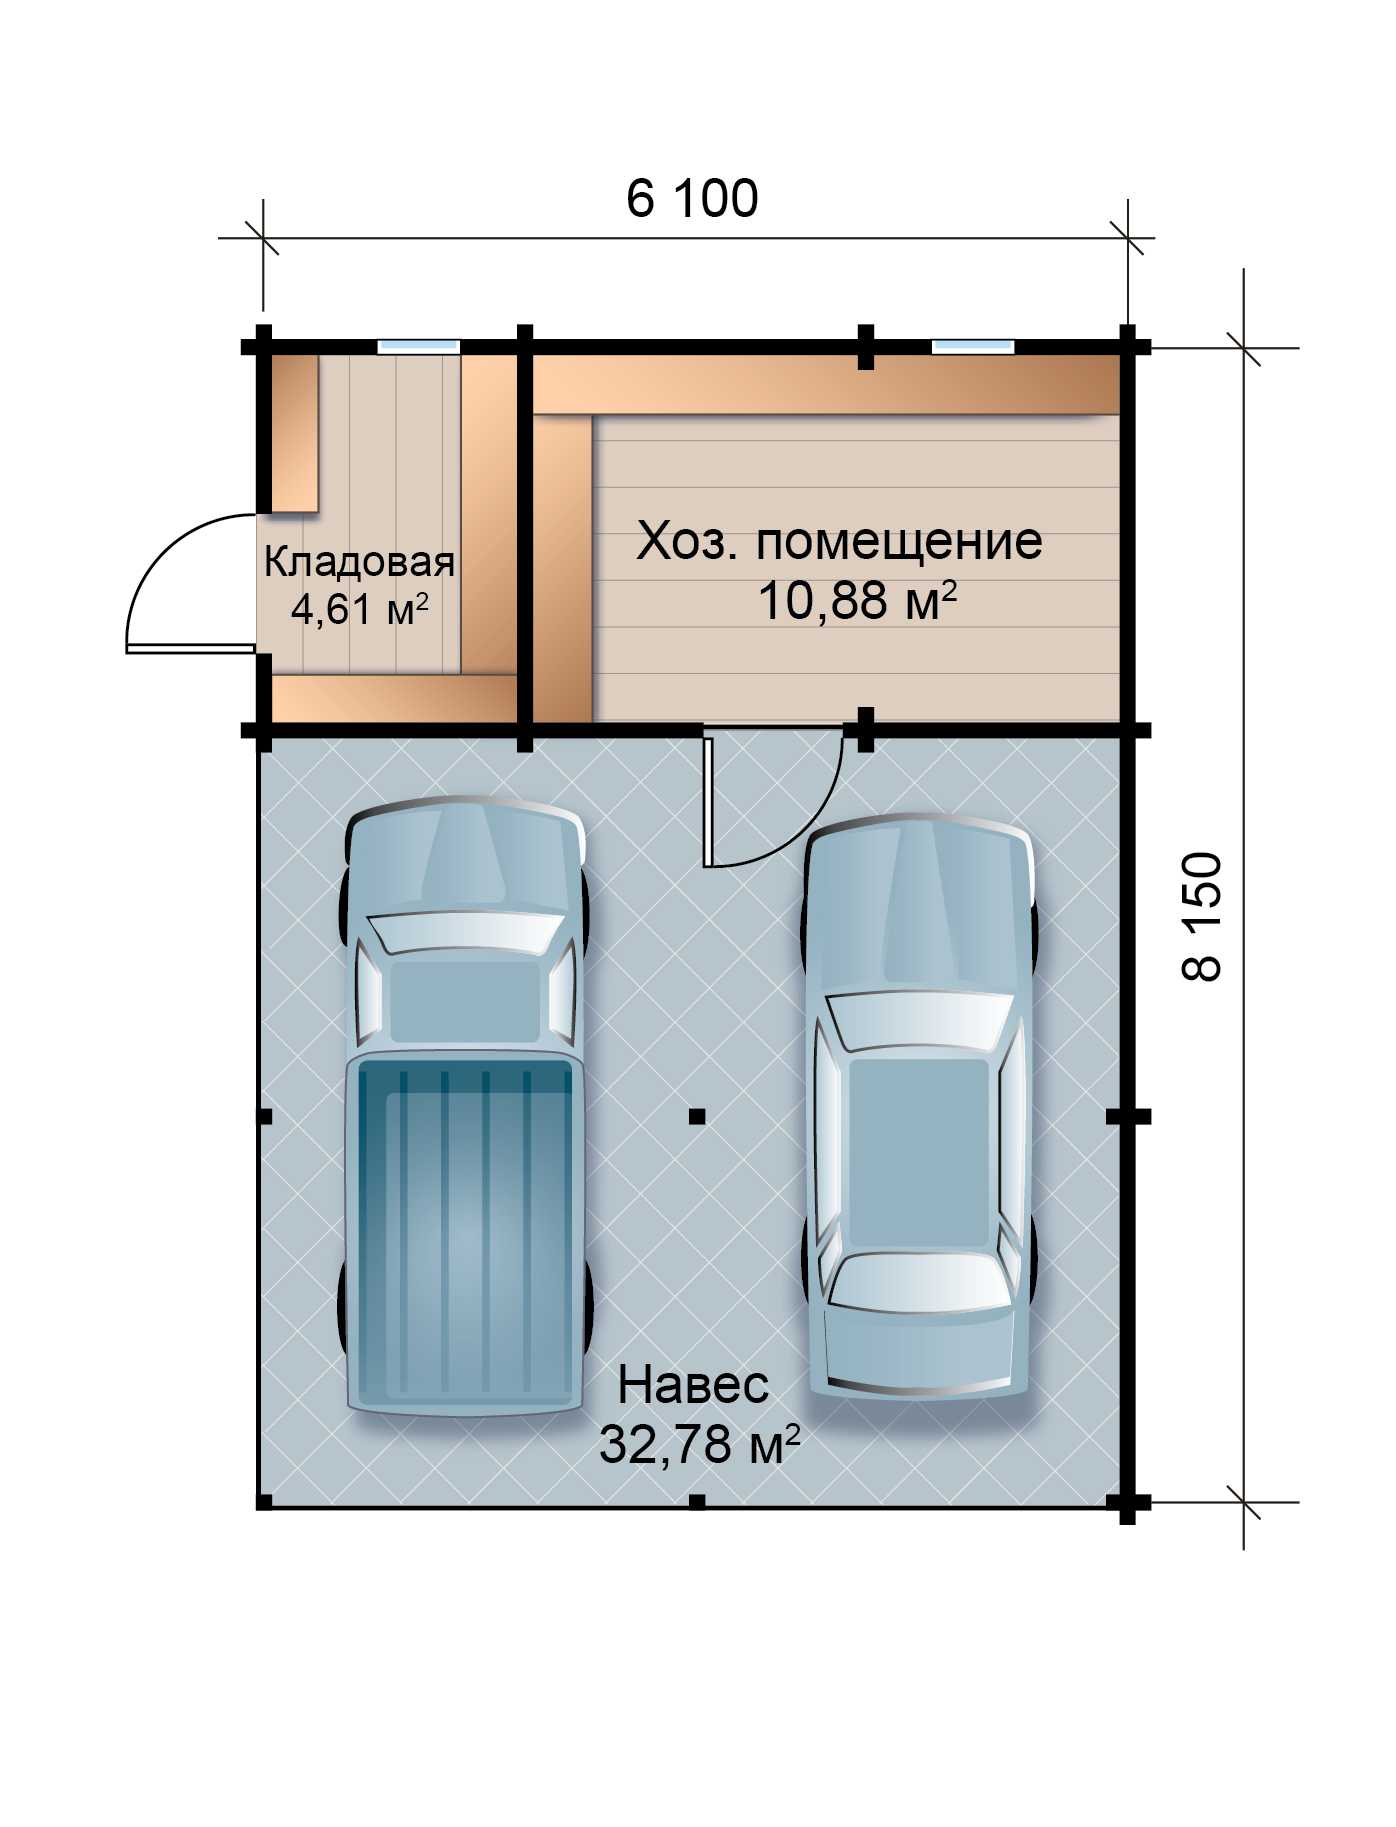 Проектирование гаражей: нормы снип, правила установки и стандартные размеры гаражей для автомобилей